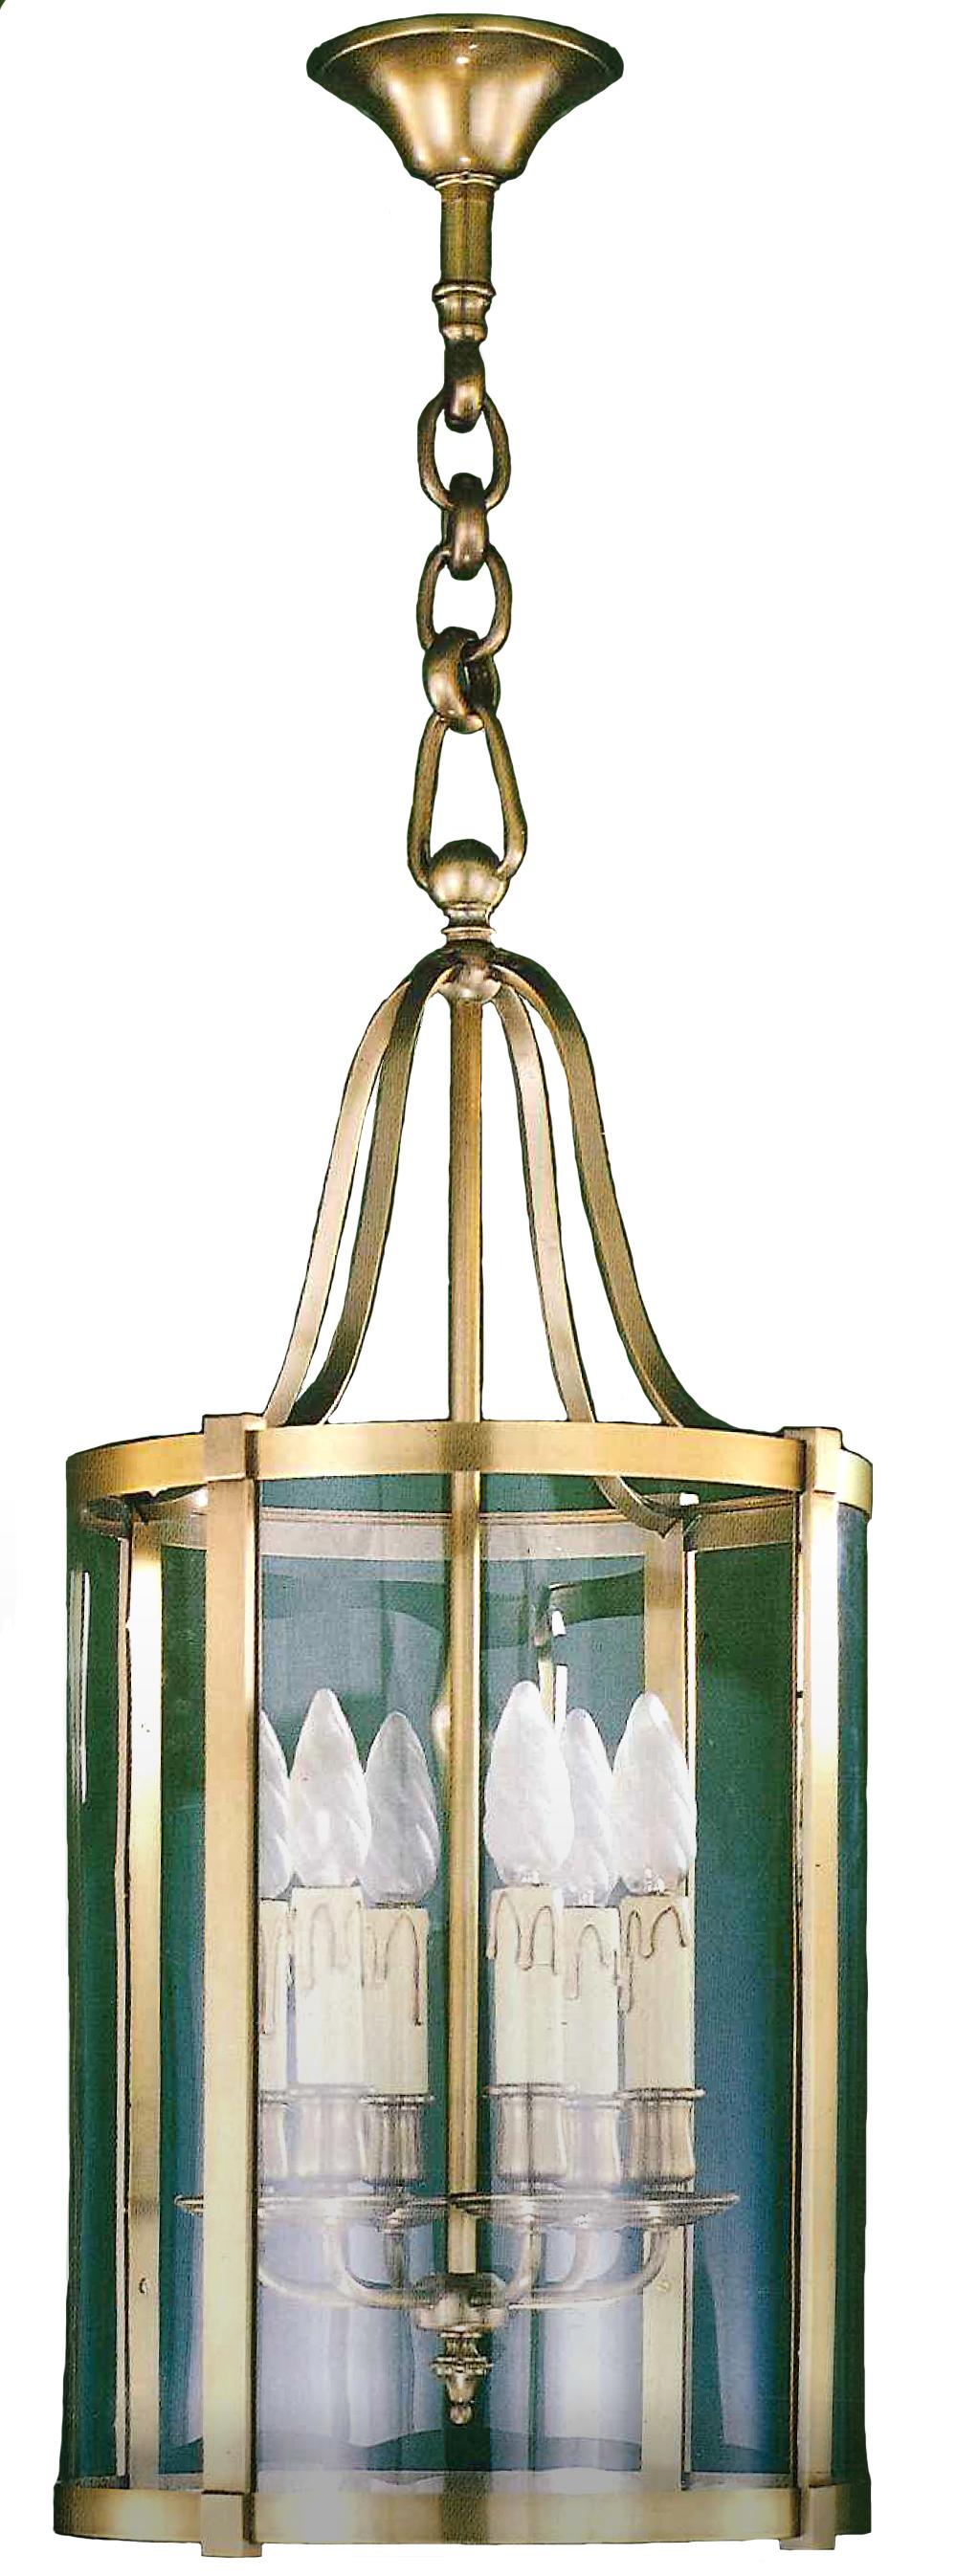 Cette lanterne en bronze à six lumières est simple et élégante, son design brut s'accorde avec tous les intérieurs.